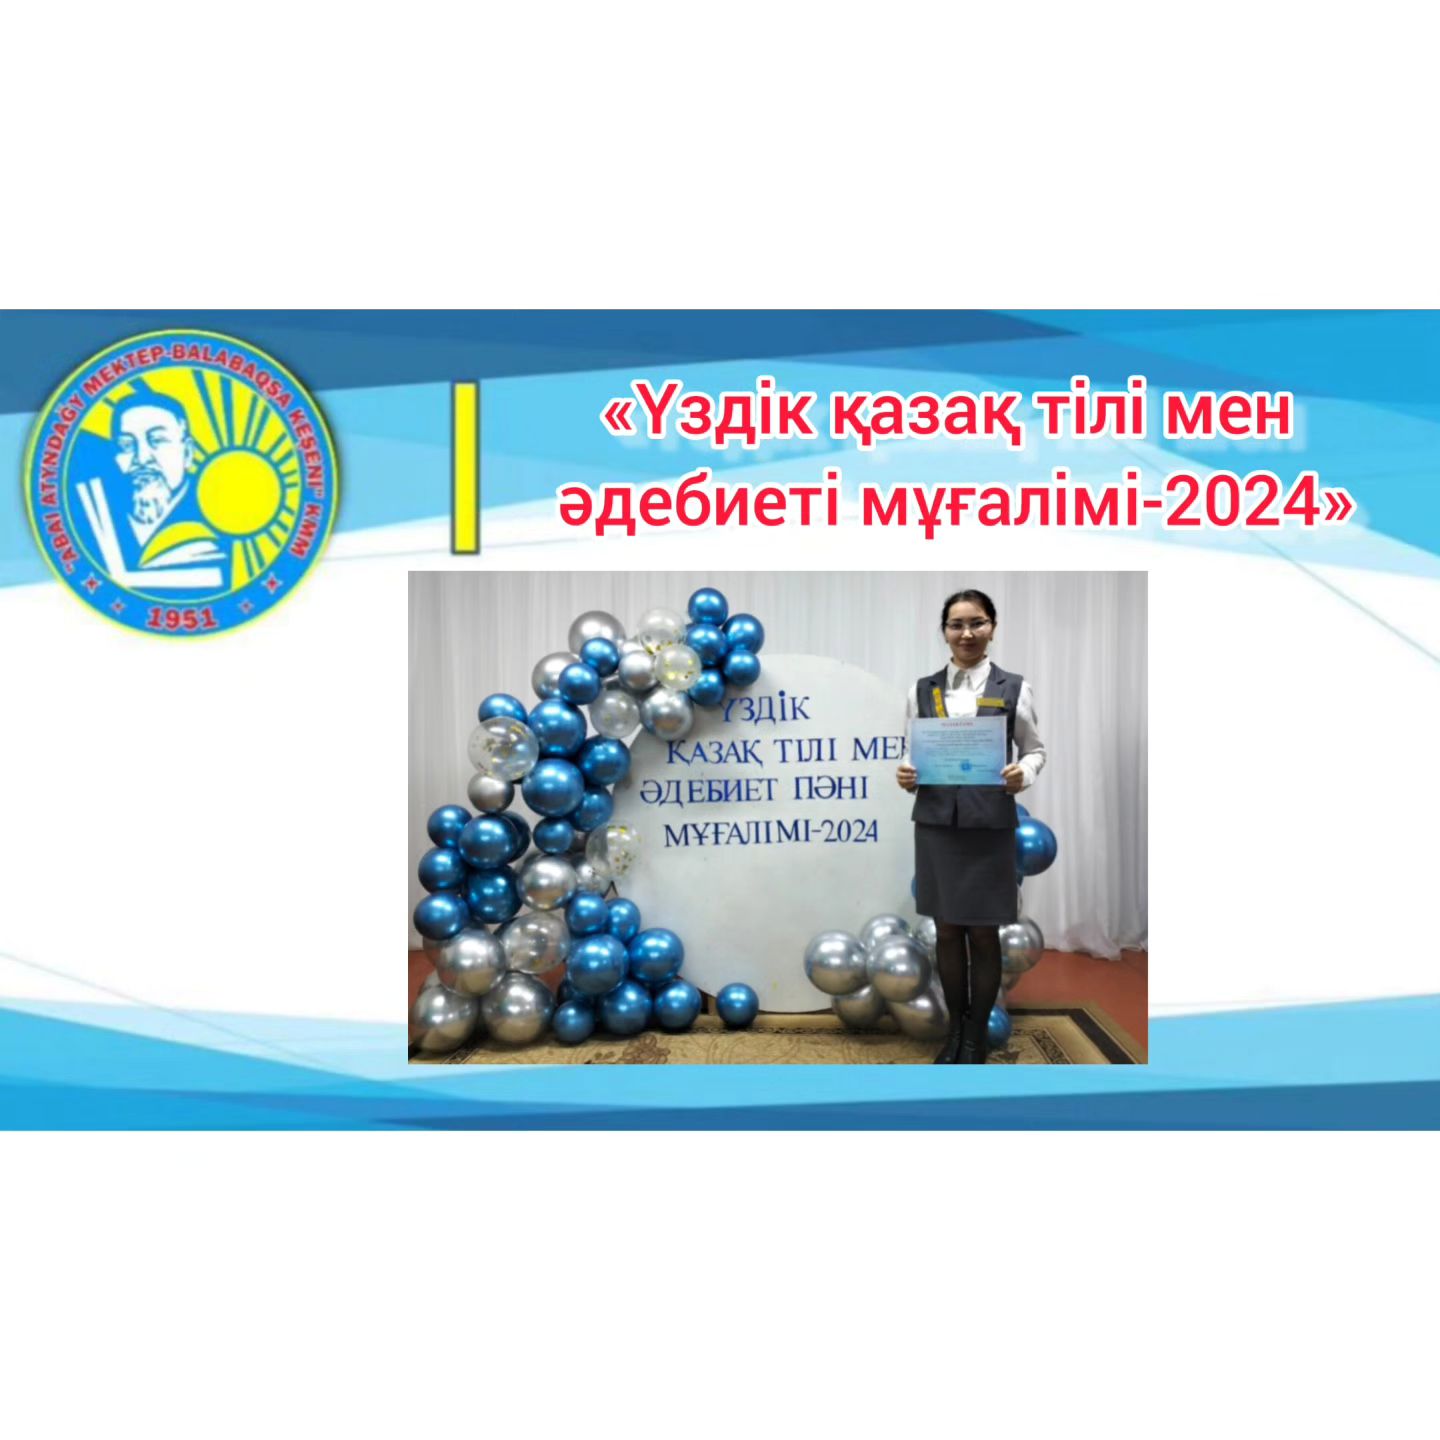 «Үздік қазақ тілі мен әдебиеті мұғалімі-2024» аудандық байқауы